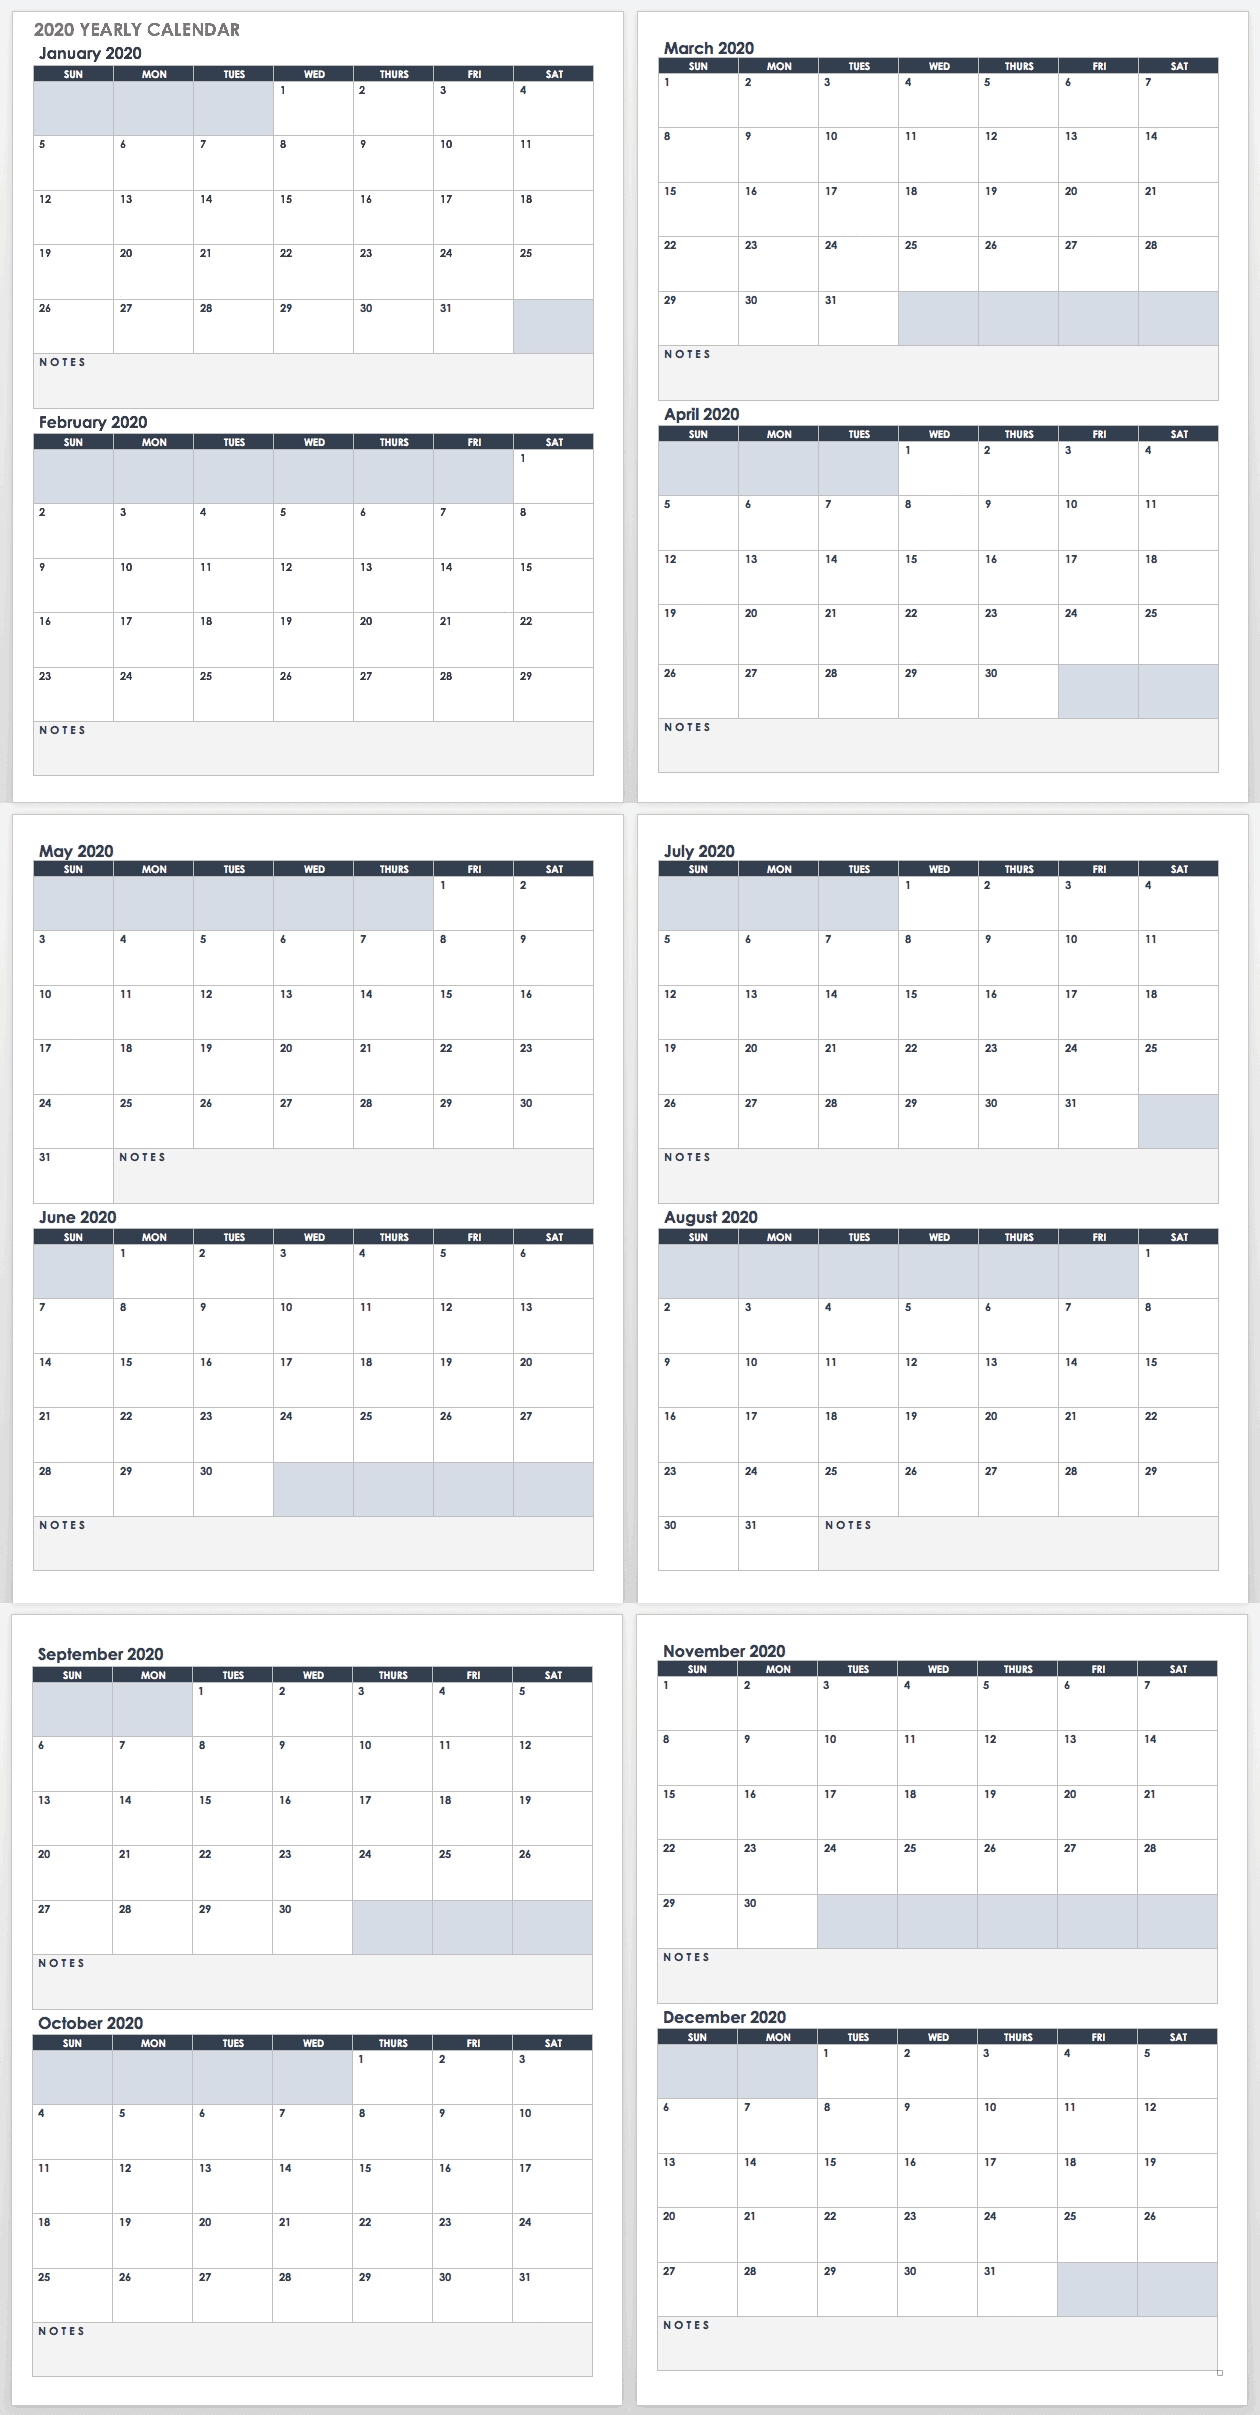 2020 Employee Attendance Calendar Free | Calendar For Planning throughout Free Printableemployee Attendance Calendars 2020